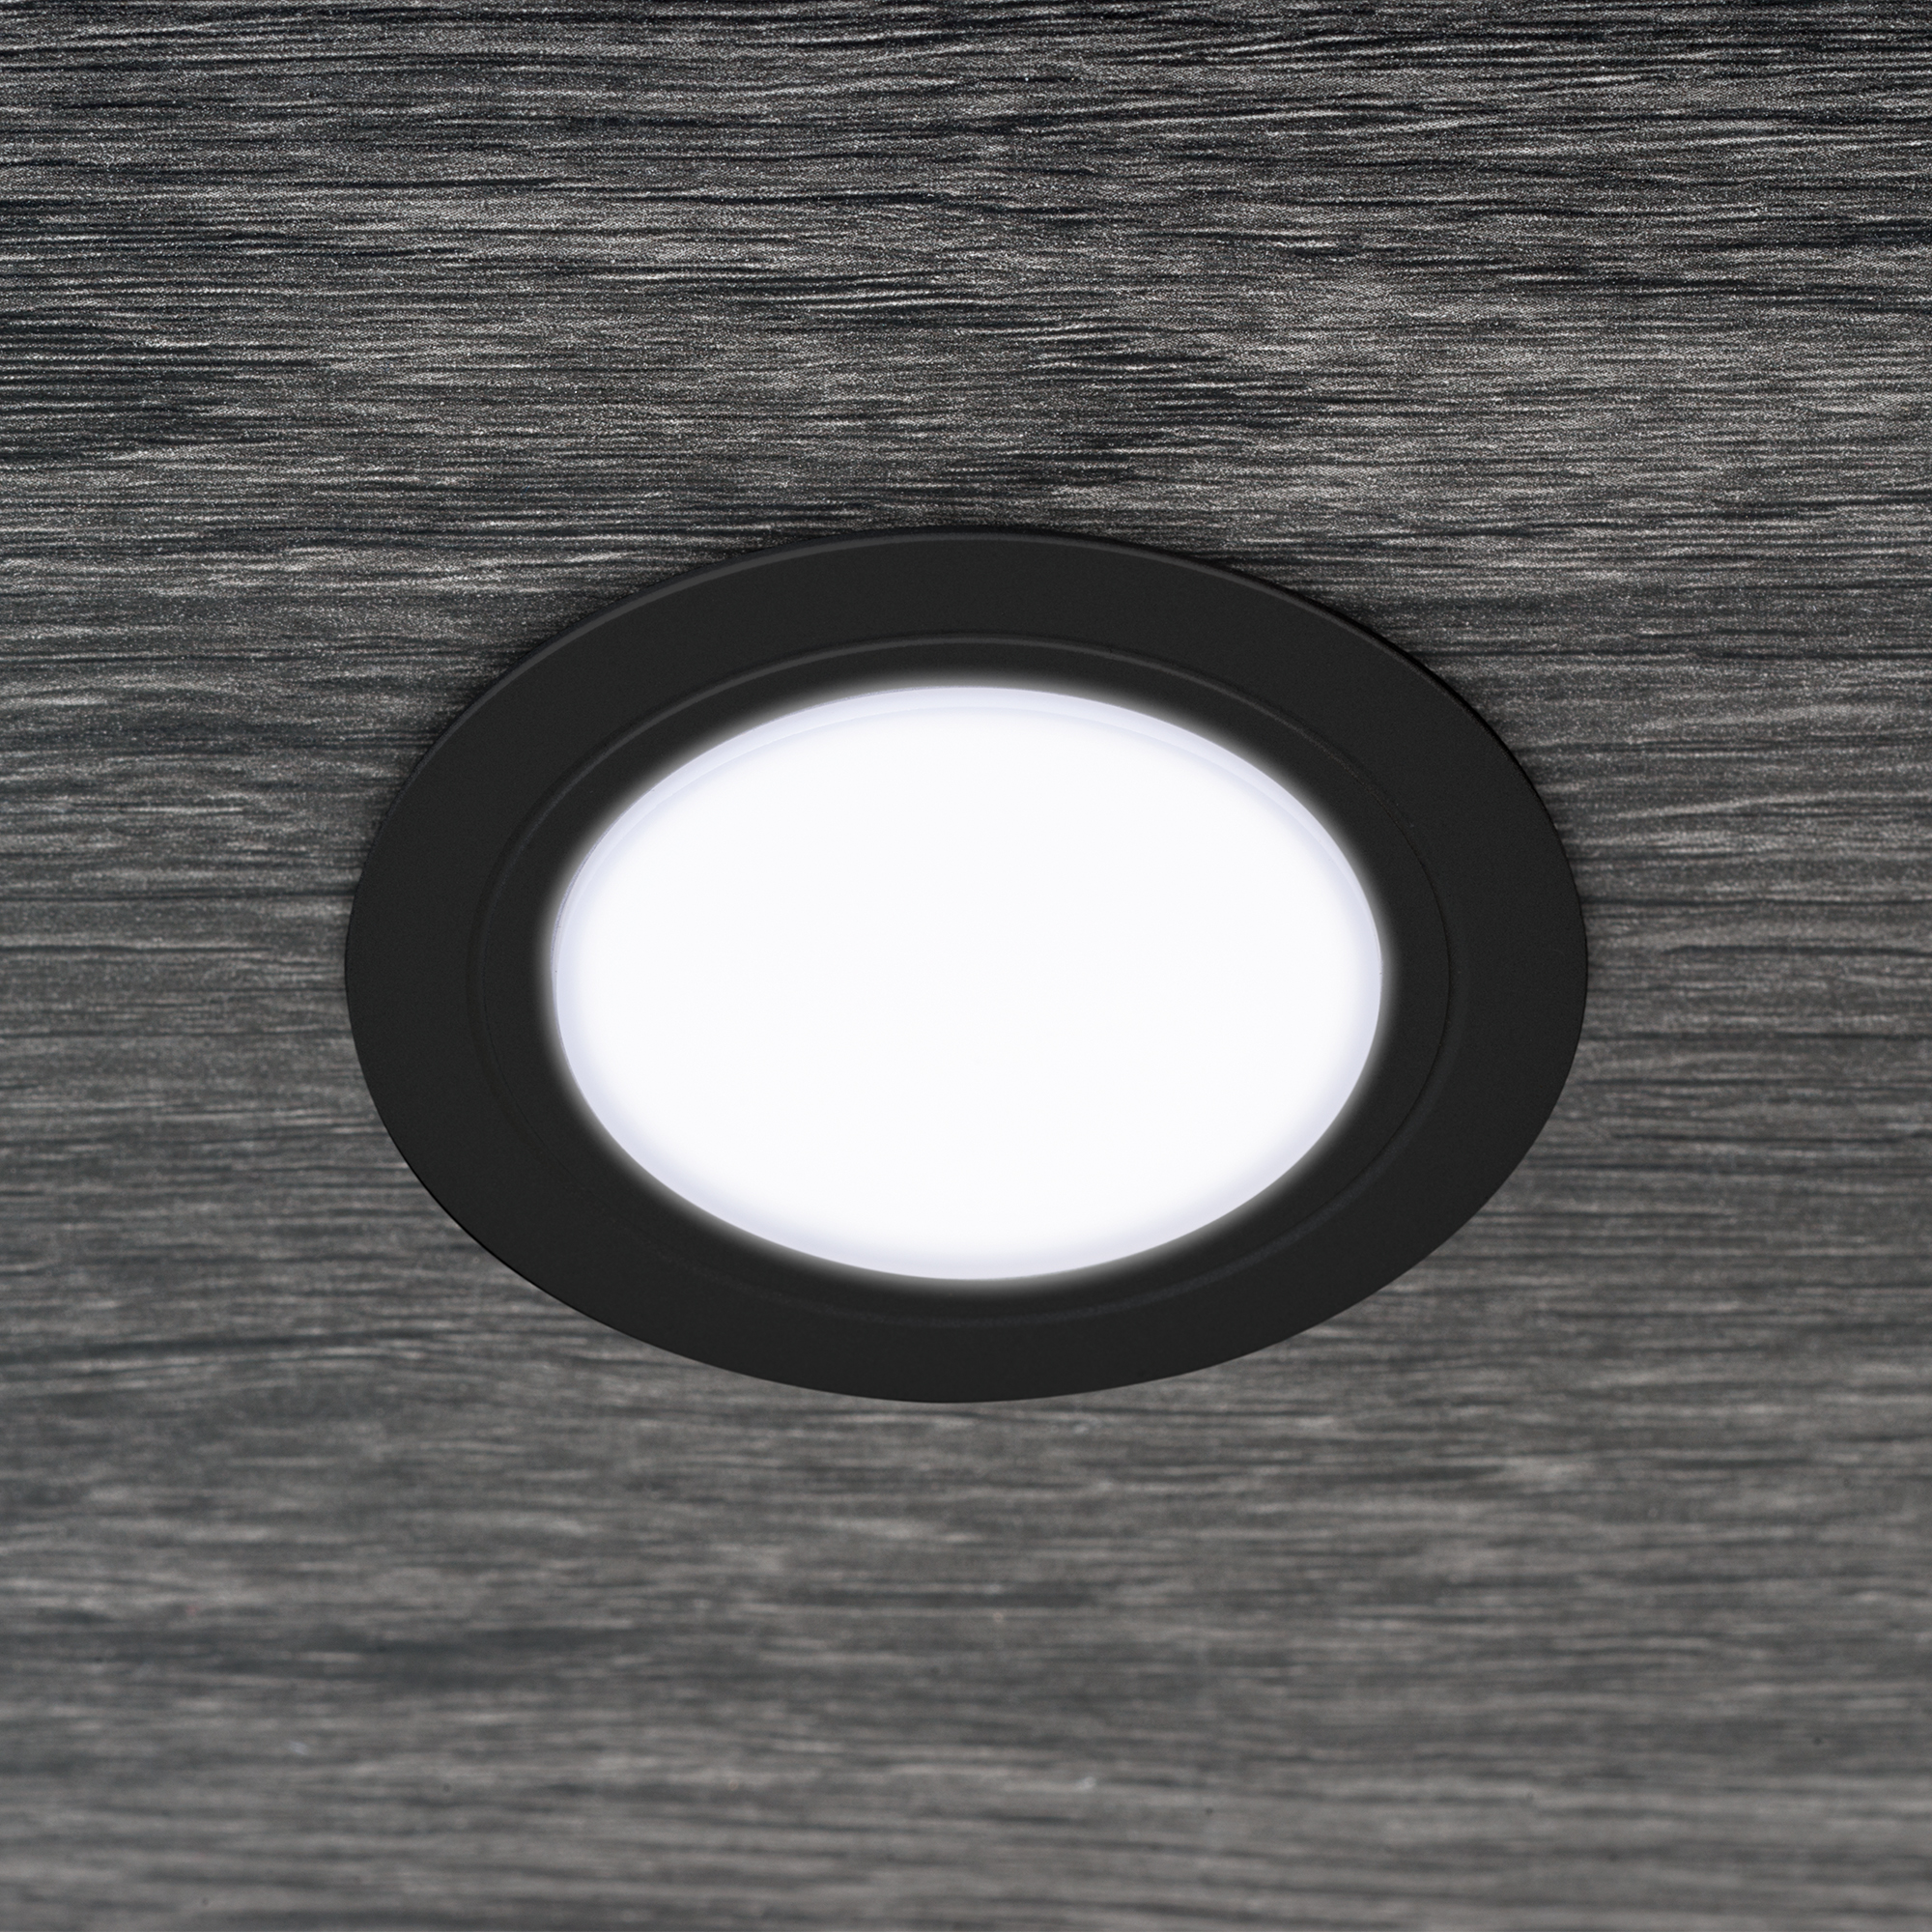  Luminaire LED Mizar pour encastrement dans des meubles sans besoin de convertisseur (AC 230V 50Hz), 84, Peint en noir